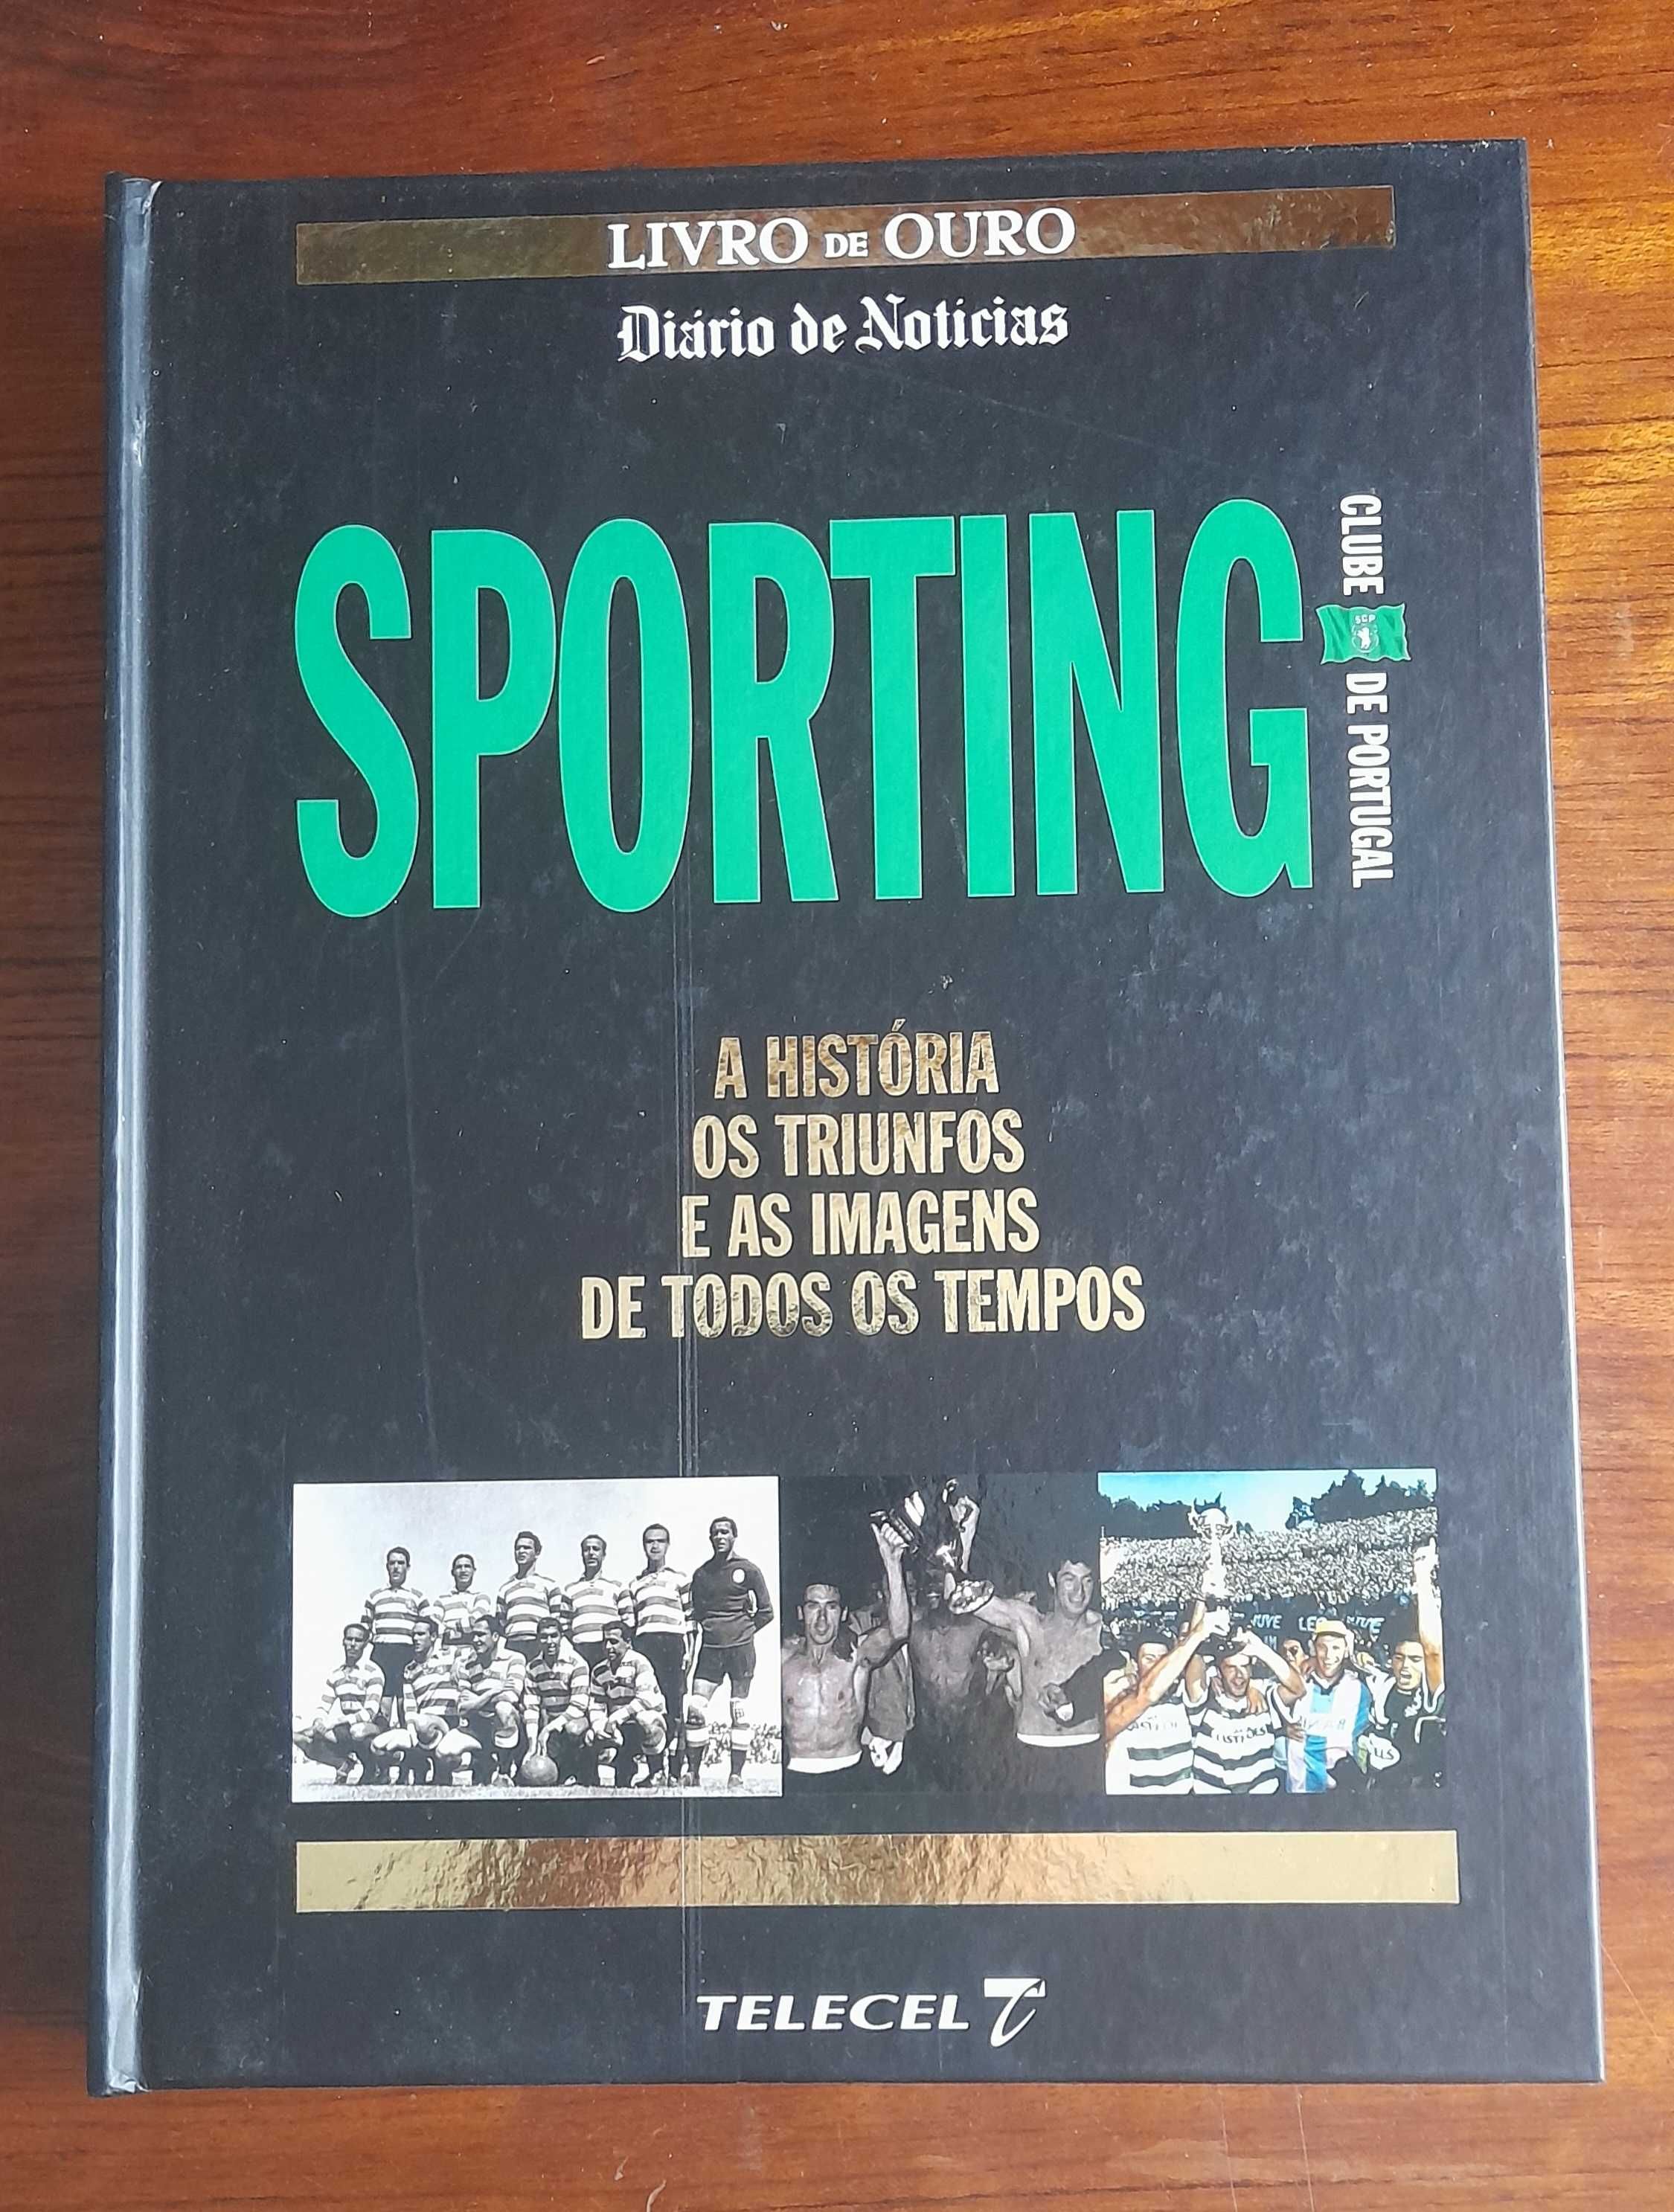 Livro sobre a história do Sporting.